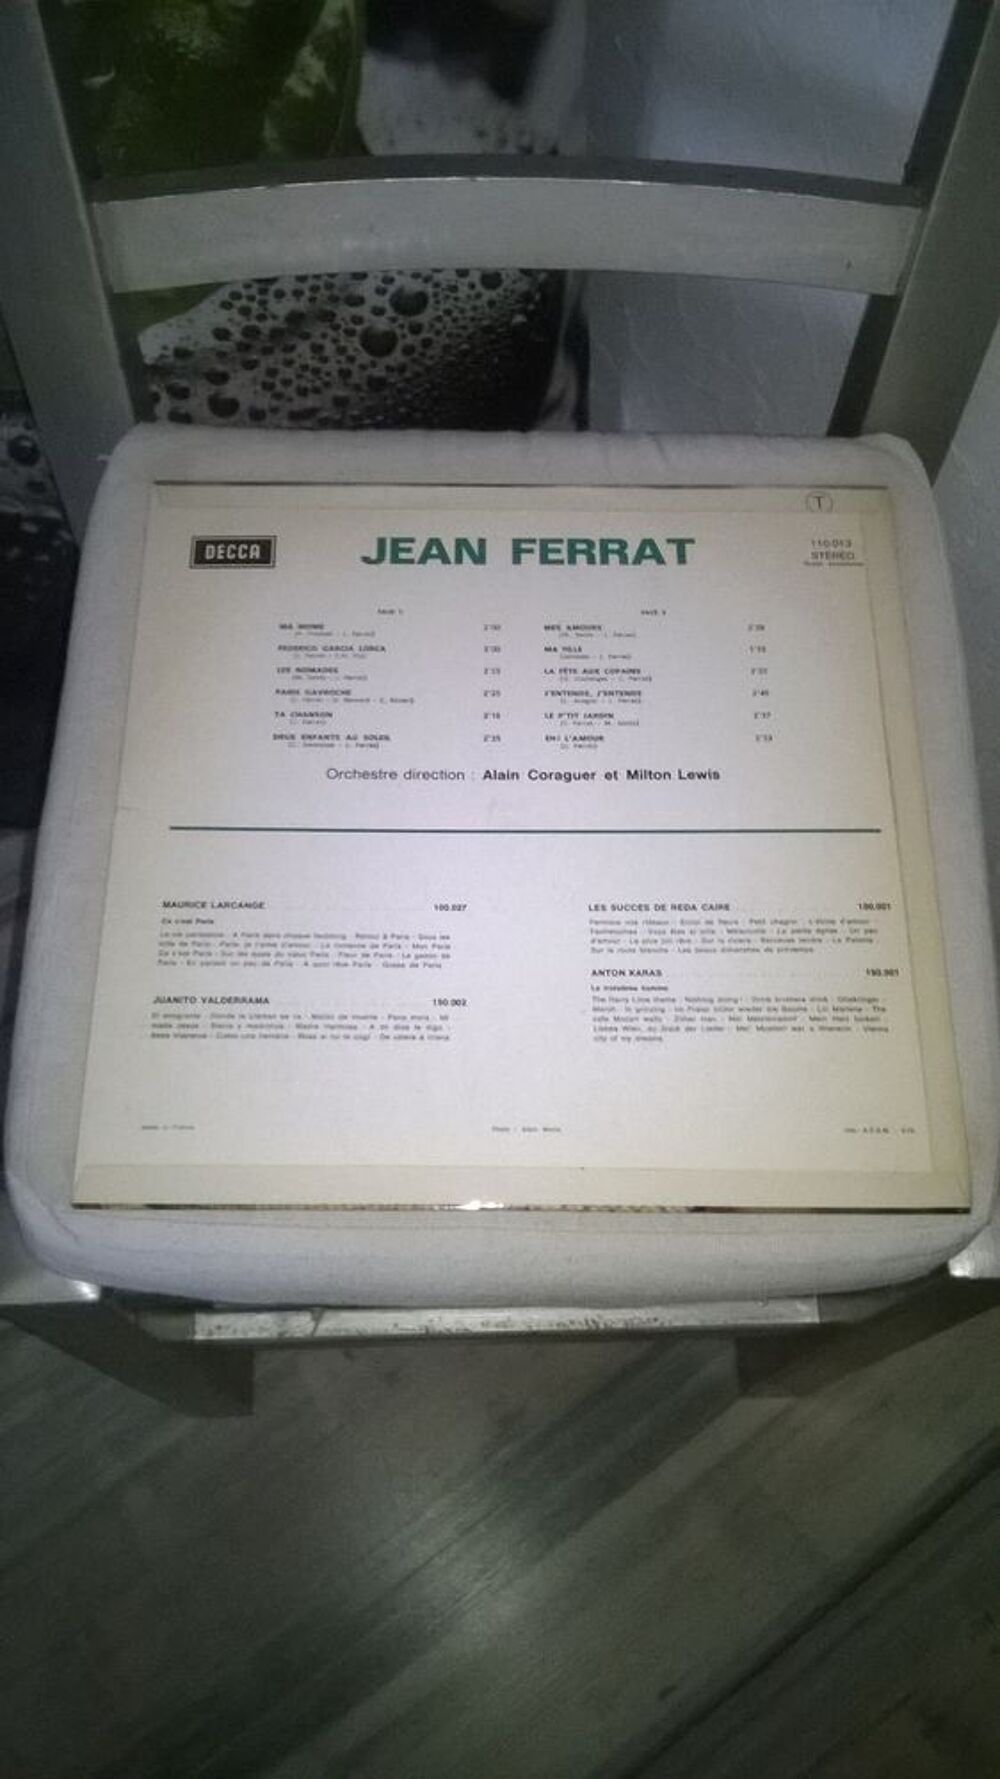 Vinyle Jean Ferrat
1971
Excellent etat
Ma Mome
Federico G CD et vinyles